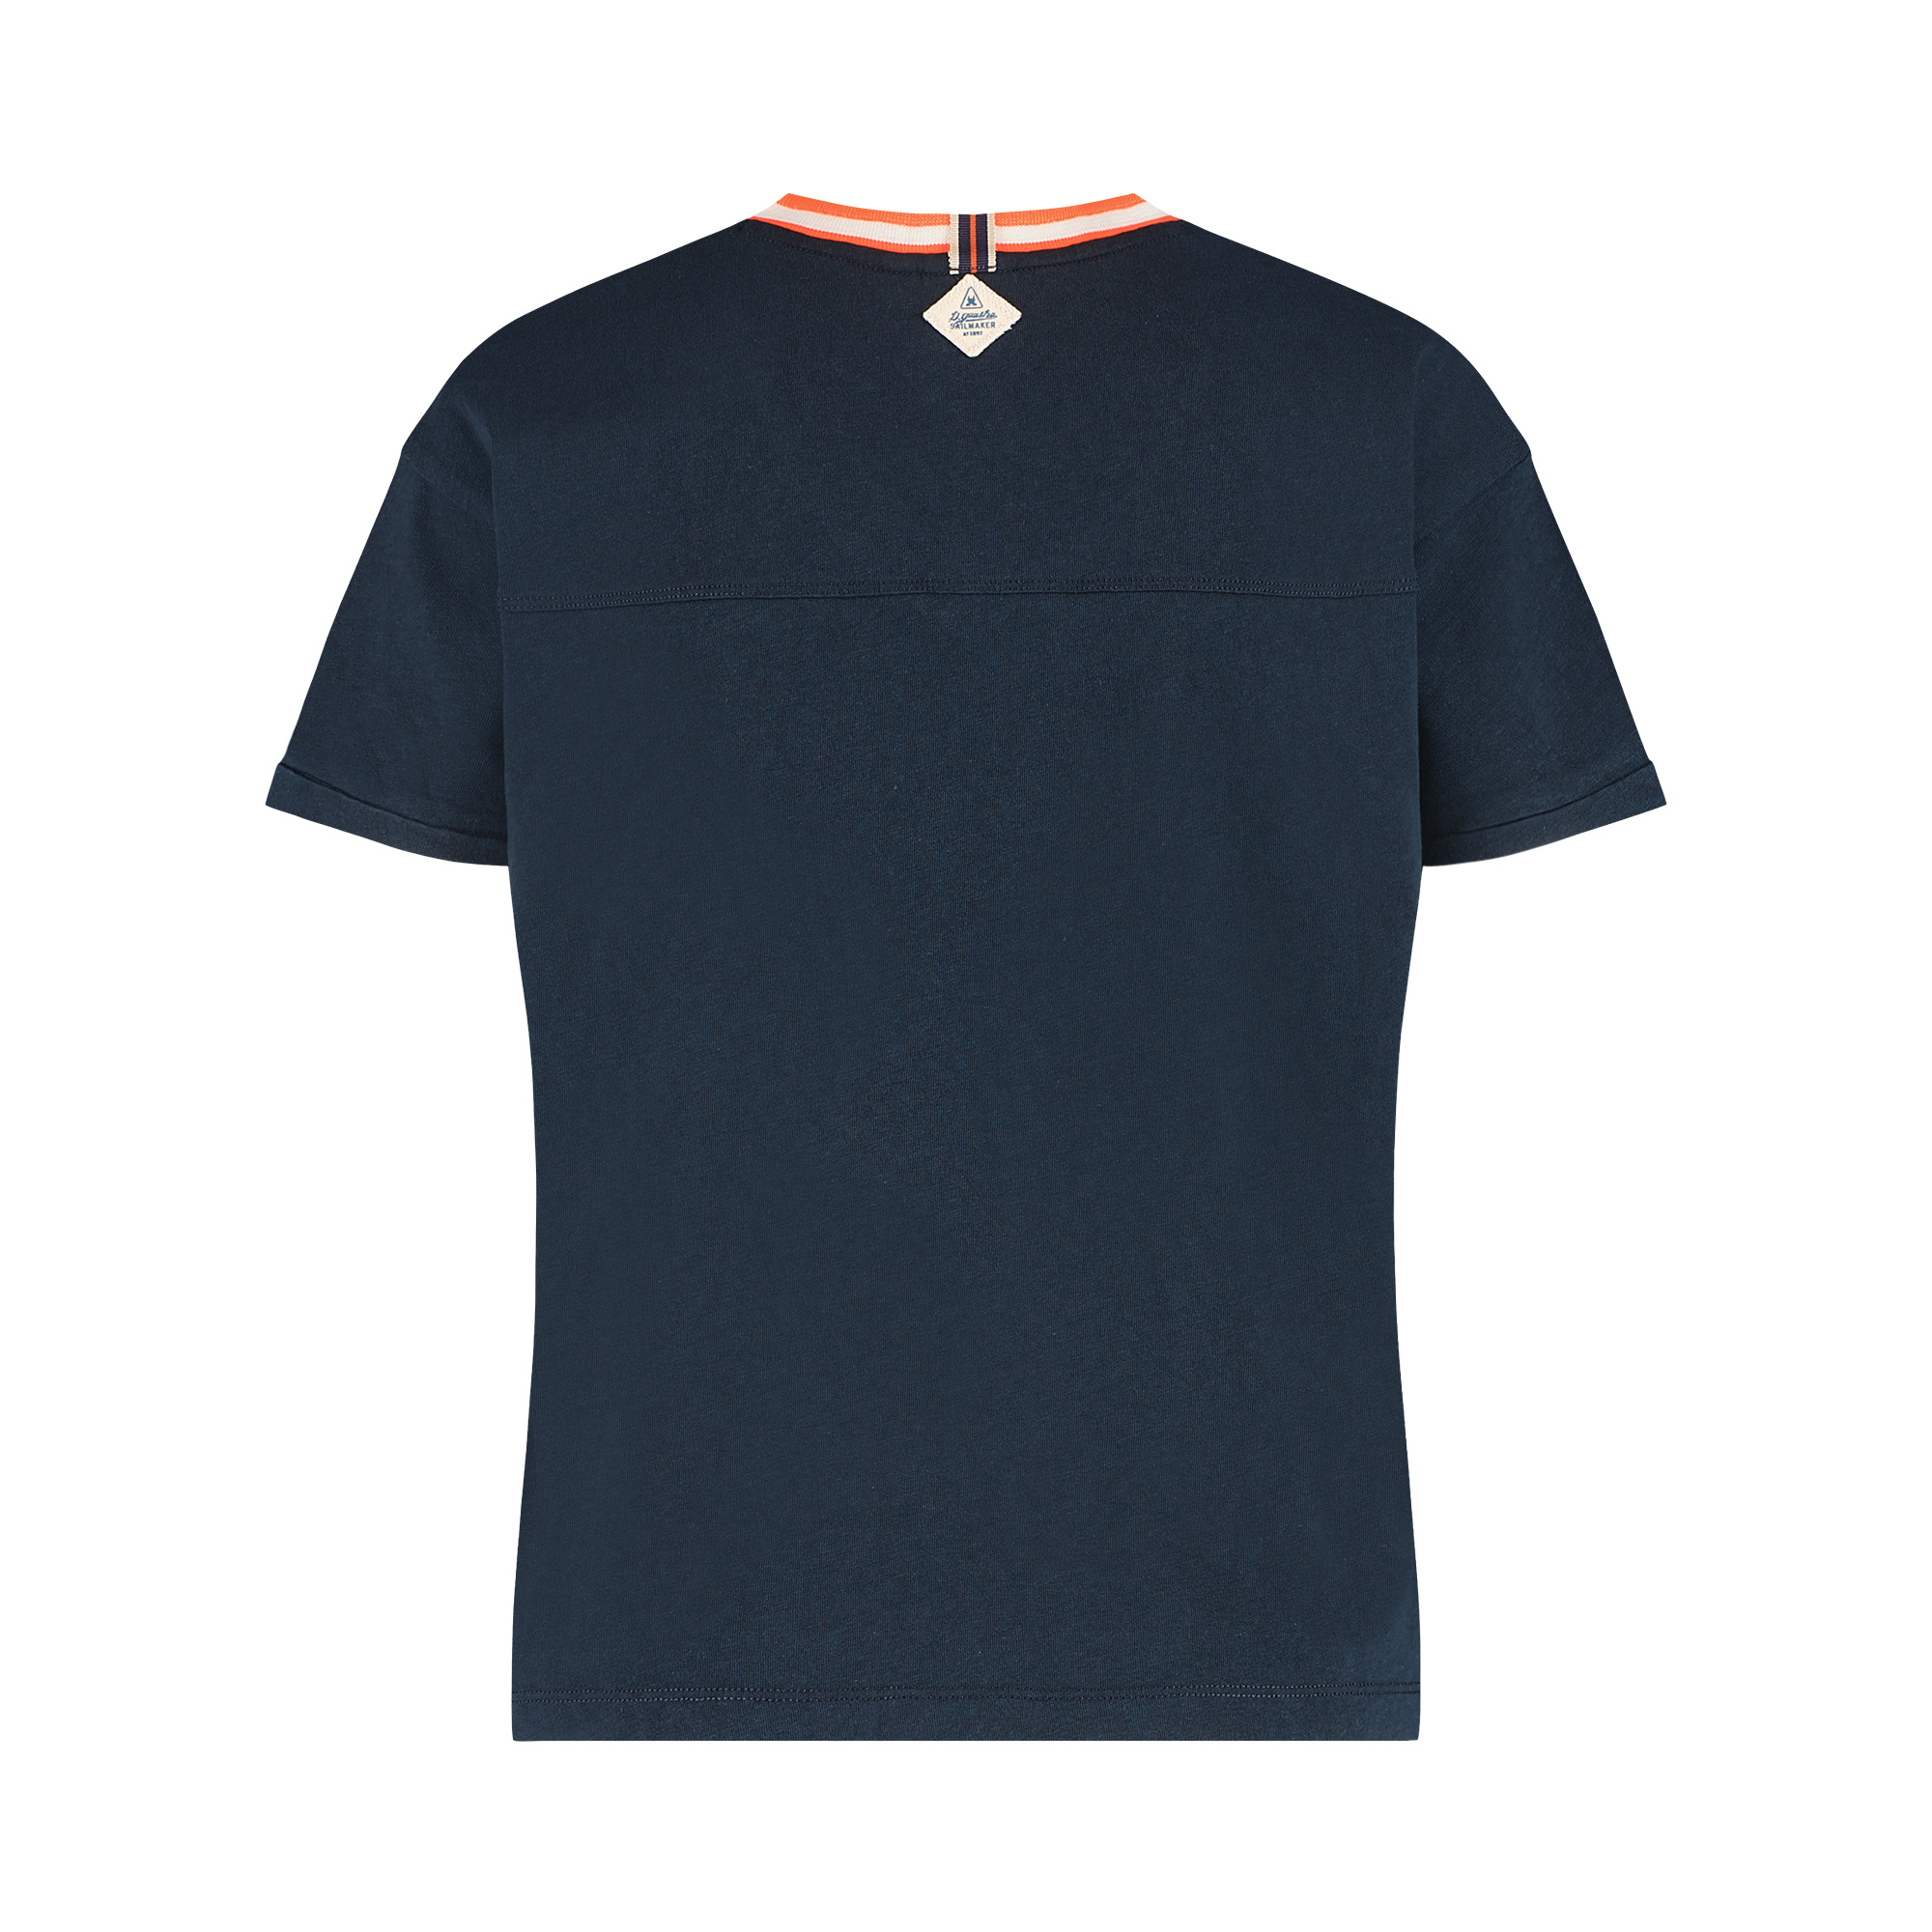 T-shirt Sealeg with V-neck